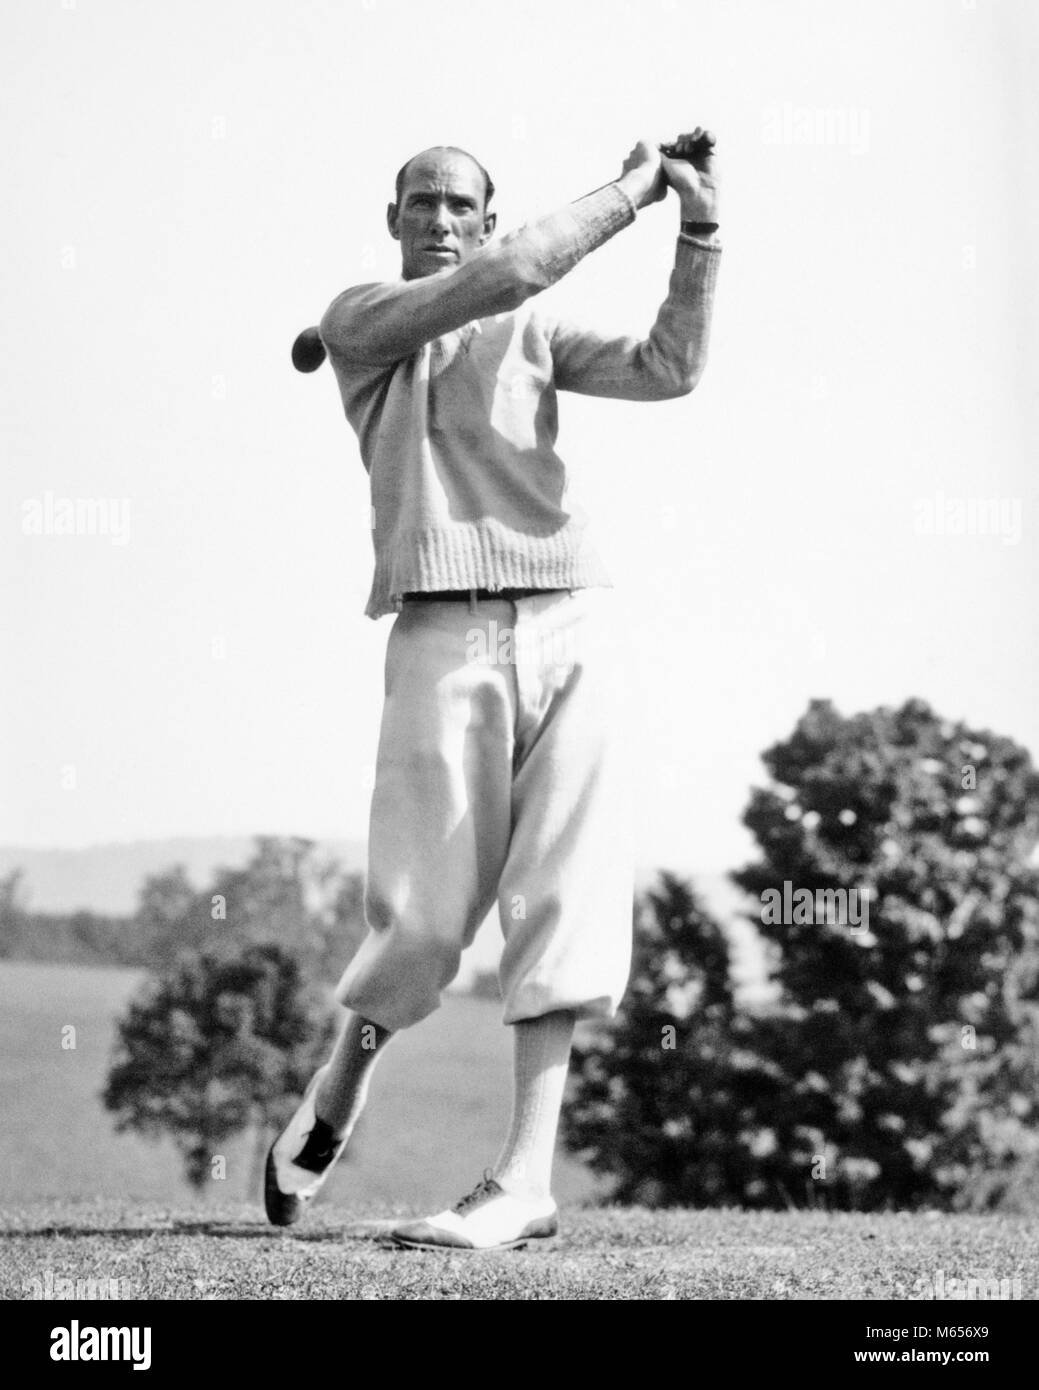 1920er Jahre 1930er Jahre MANN GOLFSPIELER TRAGEN KNICKERBOCKER UND PULLOVER SCHWINGEN FAHRER CLUB-g 3641 HAR 001 HARS GESUNDHEIT EINER PERSON NUR ATHLETIK KOPIE RAUM VOLLER LÄNGE körperliche Fitness Golf spielenden ATHLETISCHE BERUF NOSTALGIE 30-35 Jahre 35-40 JAHRE ZIELE AKTIVITÄT KURS BESETZUNG PHYSIKALISCHE VERSTÄRKUNG GEWICHTSVERLUST HOBBY FREIZEIT STILE HOSE SELBSTACHTUNG KARRIERE FREIZEIT SCHWINGEN DER PSYCHISCHEN GESUNDHEIT MODE HONEN FÄHIGKEITEN ATHLETEN FLEXIBILITÄT MUSKELN Herz-kreislauf VERBESSERN PLUS FOURS ZWEIFARBIGES MÄNNER Mitte - Mitte - erwachsenen Mann ZUSCHAUER SCHUH ZWEI TON AMATEUR B&W SCHWARZ UND WEISS LATZHOSEN KAUKASISCHEN ETHNIE Stockfoto